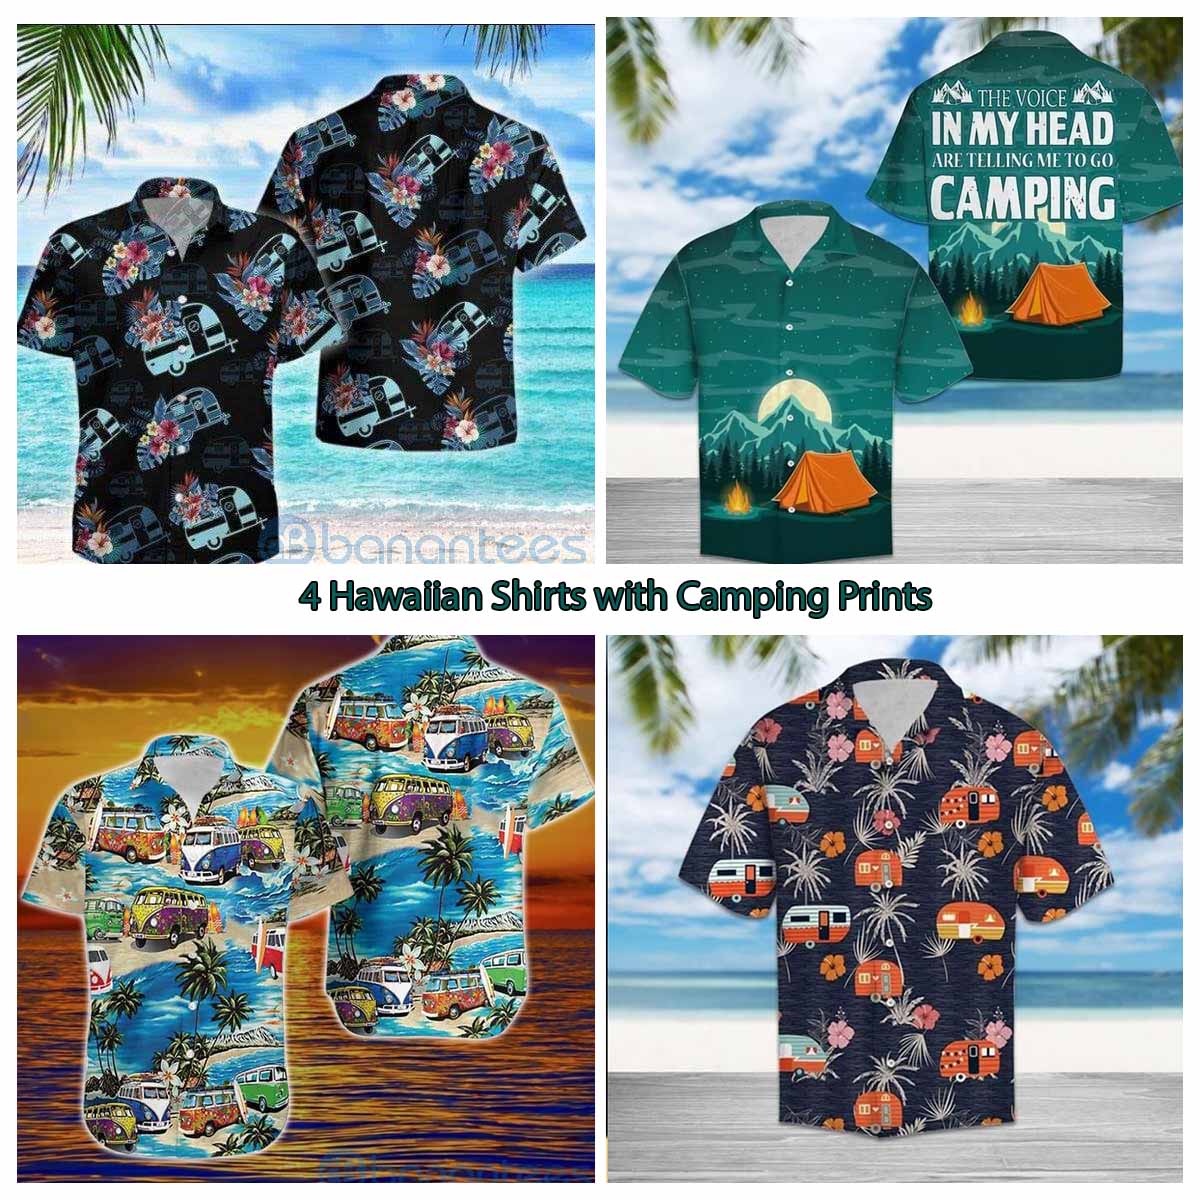 4 Hawaiian Shirts with Camping Prints